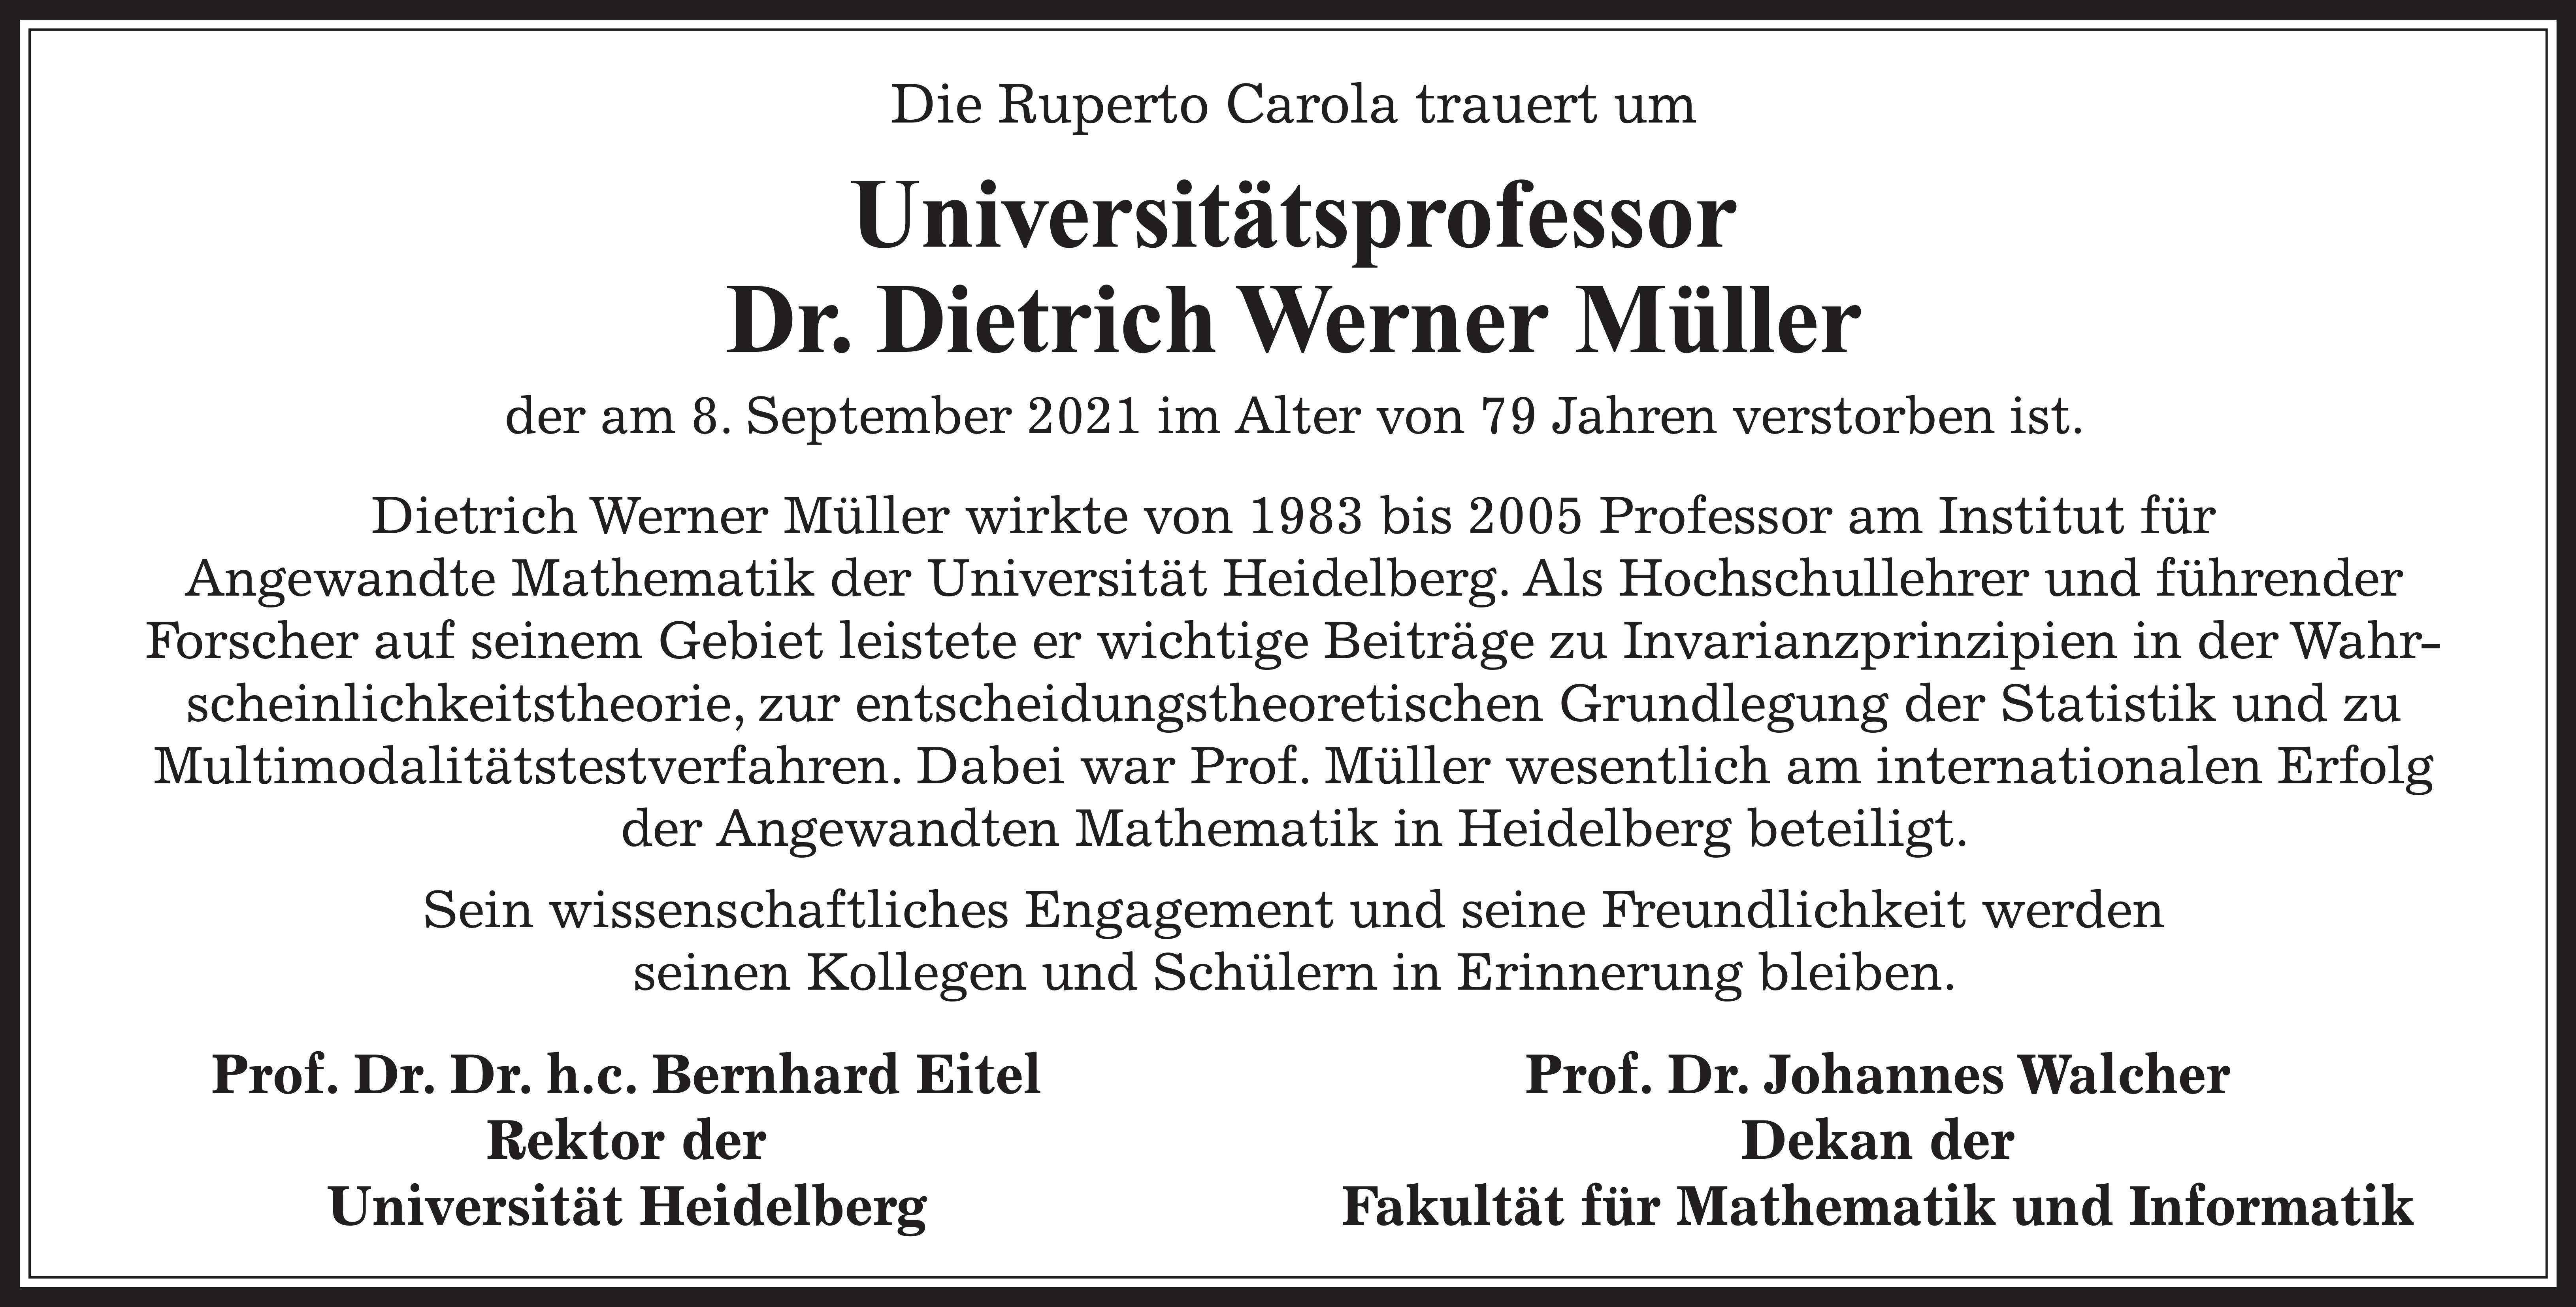 Traueranzeige
					       D.W. Müller